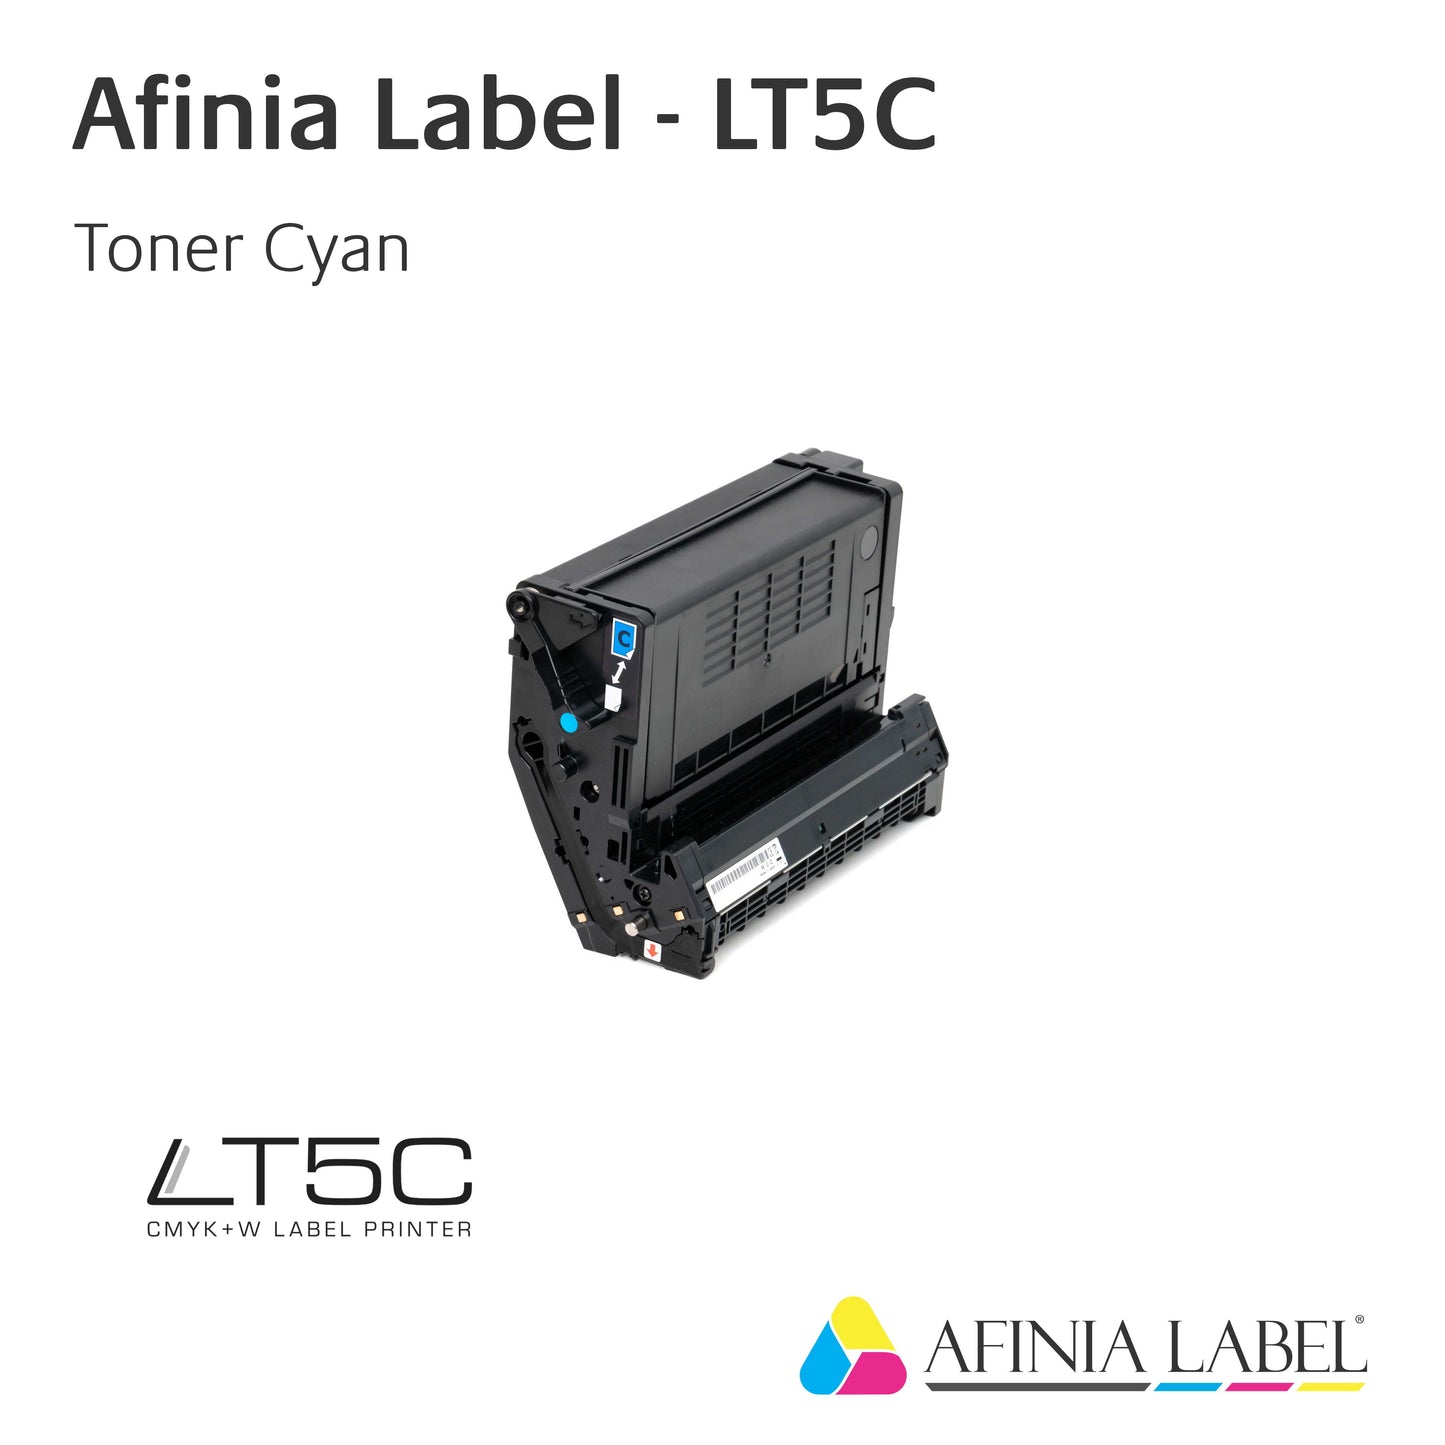 Afinia Label LT5C Verbrauchsmaterial